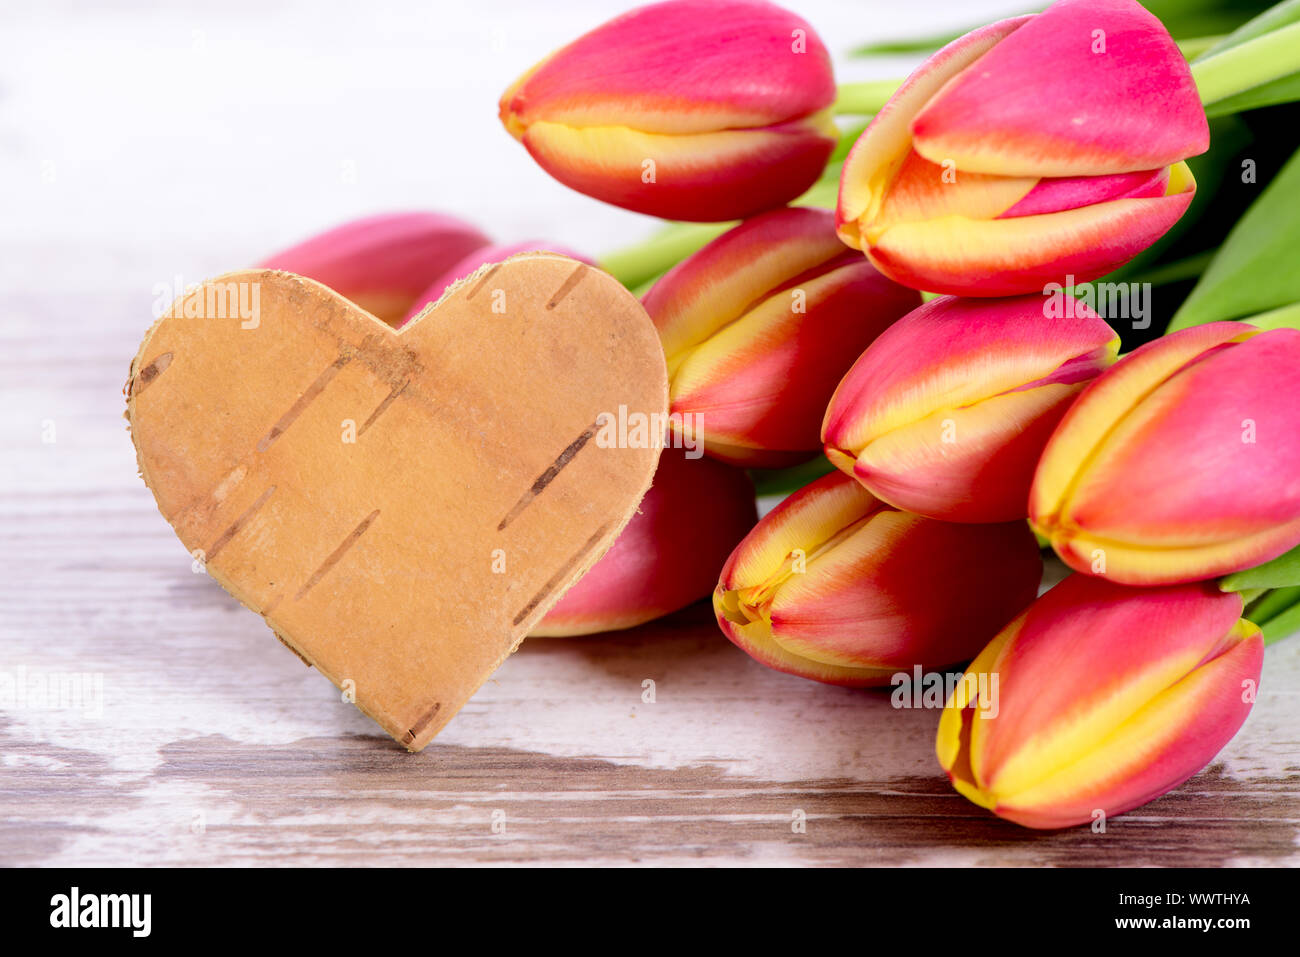 Día de San Valentín hombre sostiene flores en racimos de color rojo corazón  amor de fondo. Tarjeta de San Valentín Fotografía de stock - Alamy